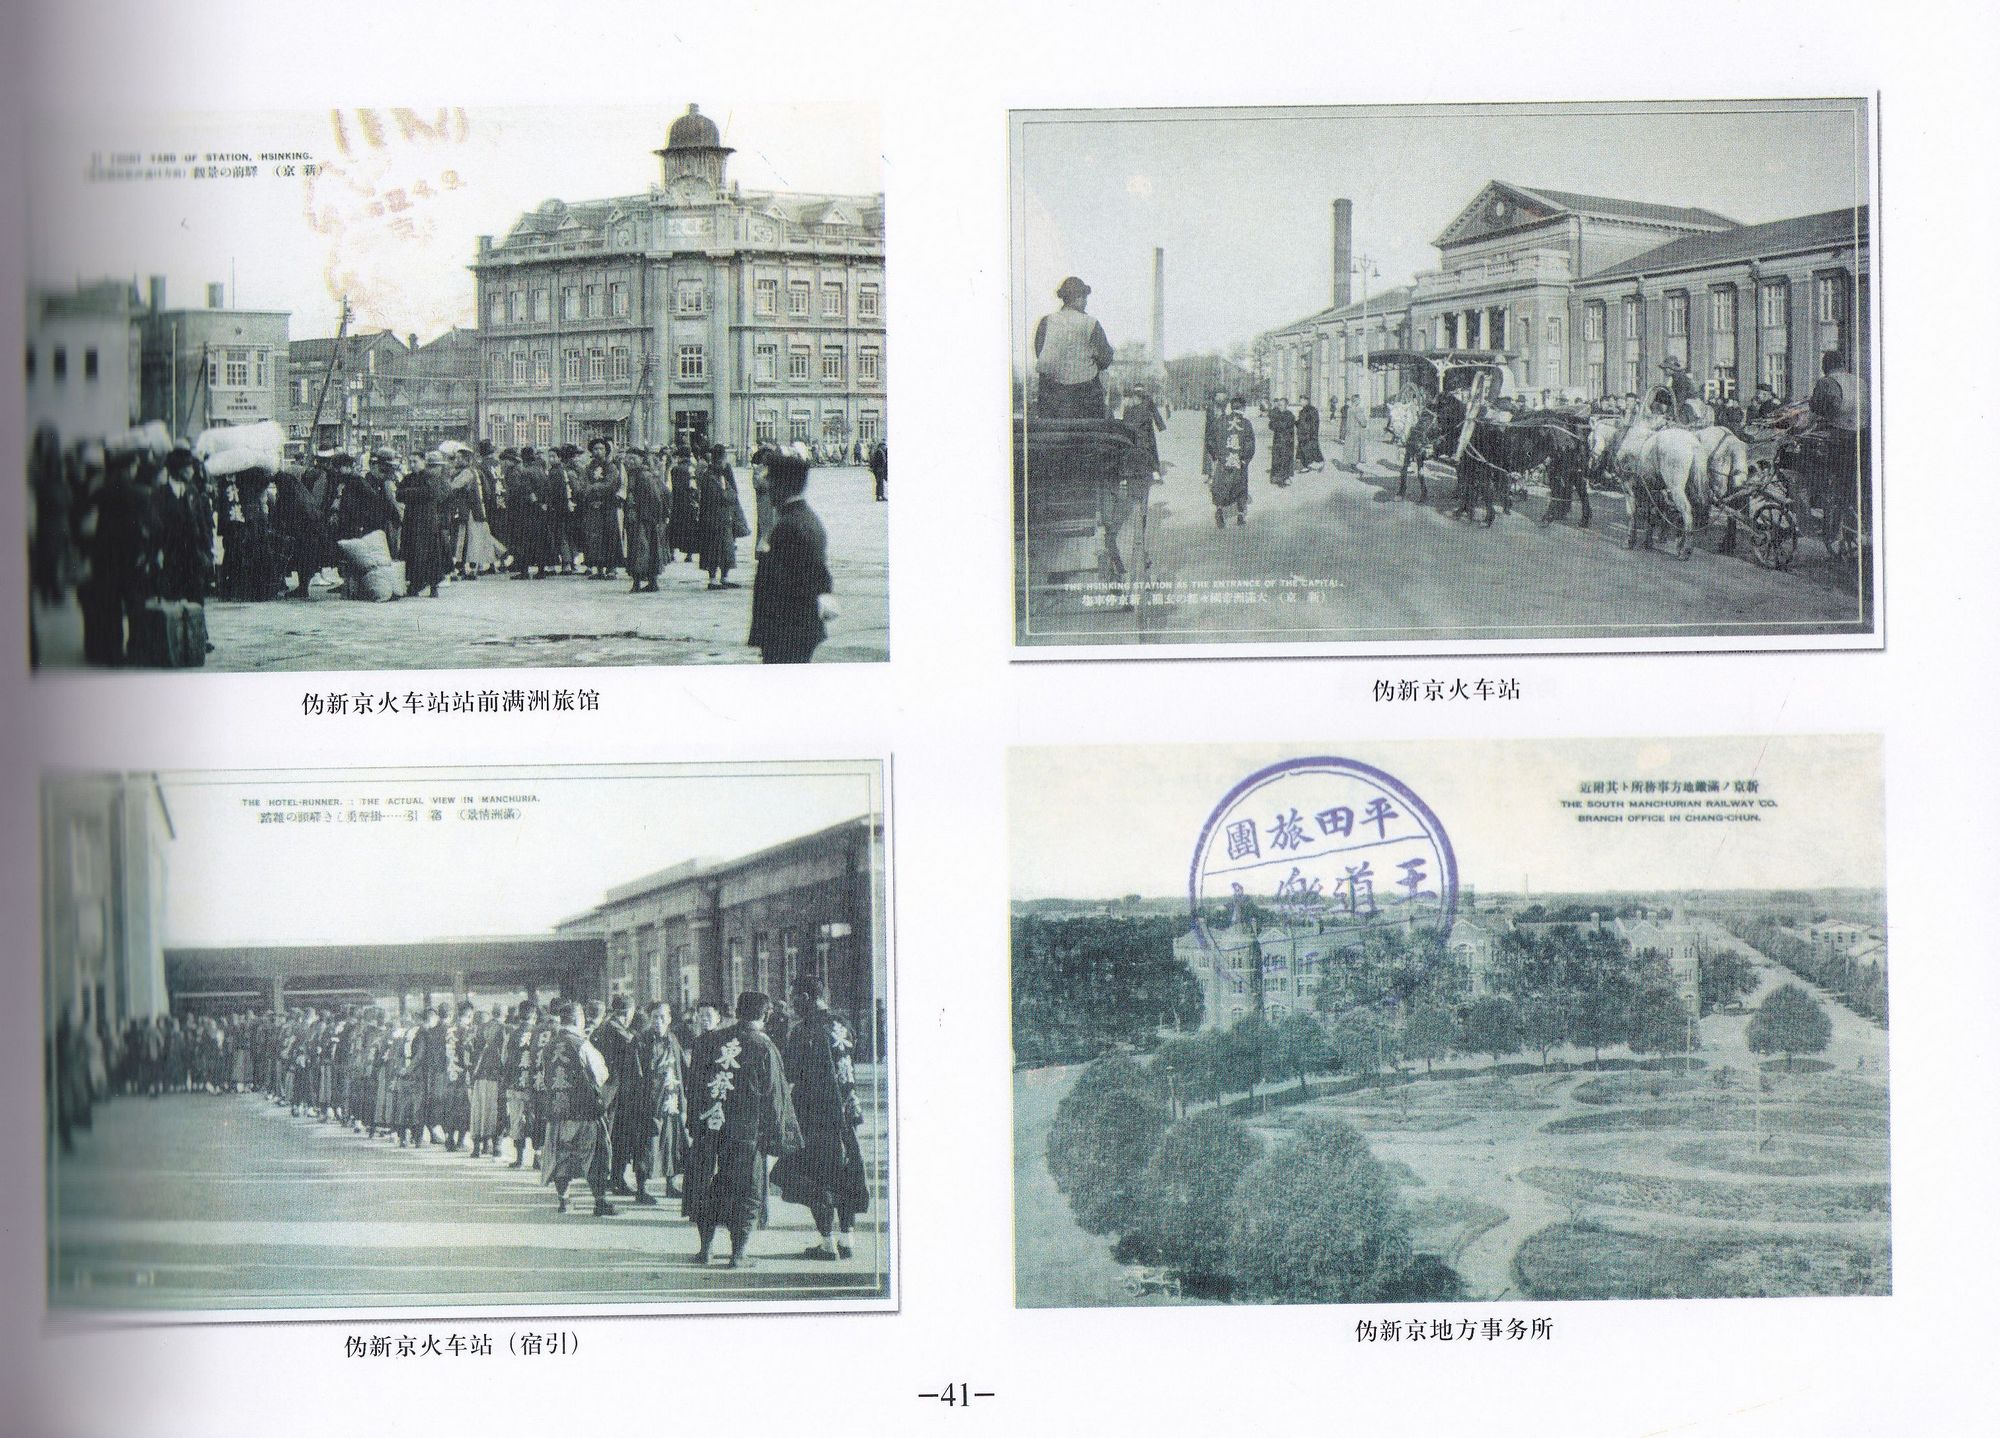 F2249, Study on Manchukuo Post Cards, China 2005